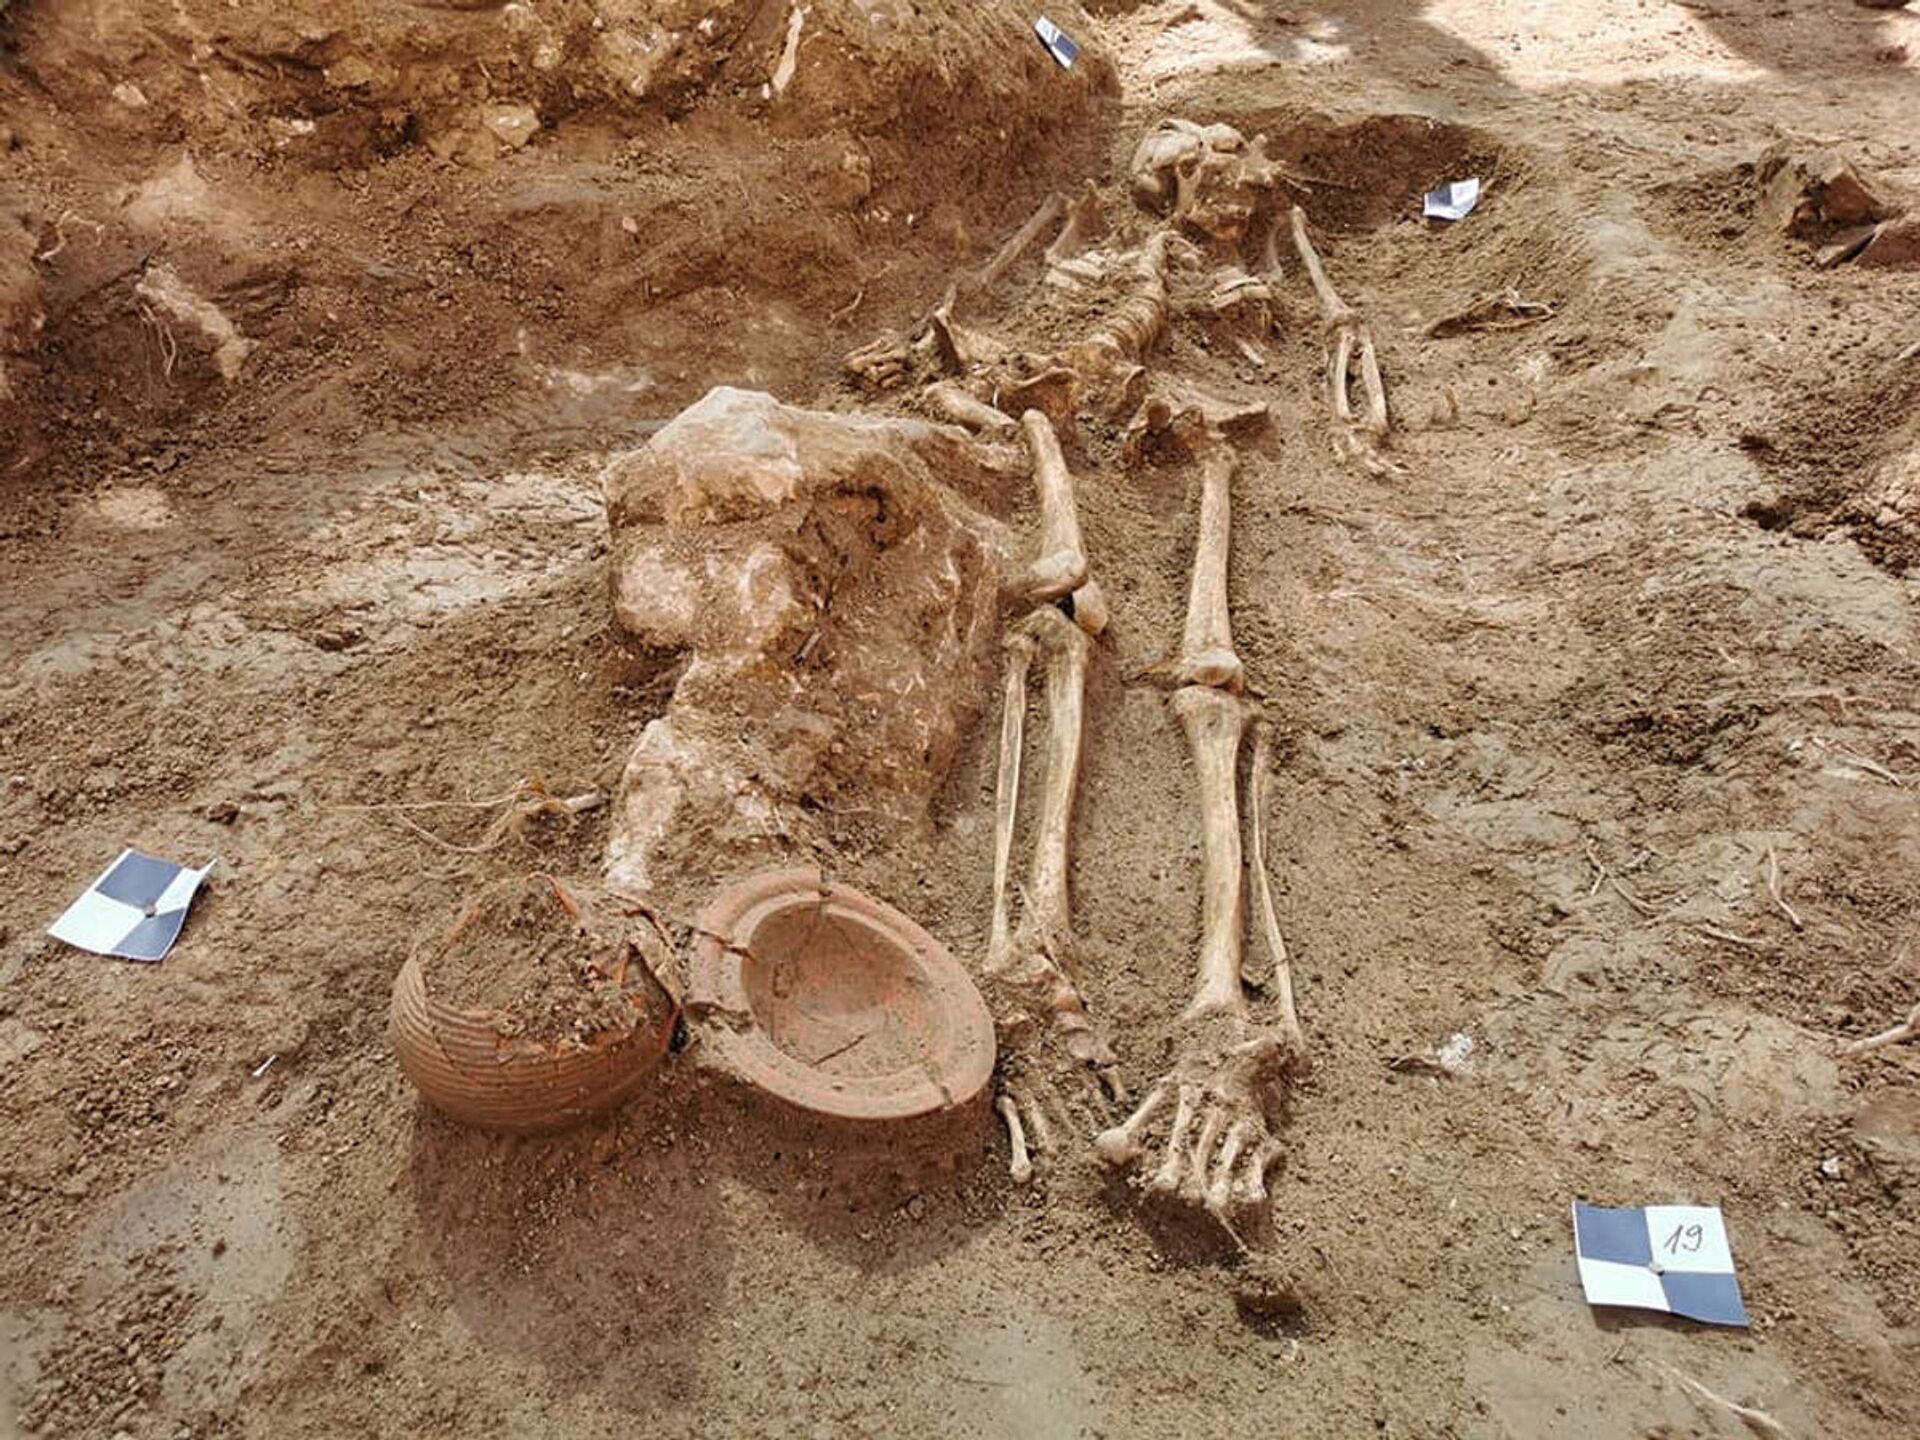 Corpos sepultados em jarros são descobertos em jardim de antigo palácio na Croácia (FOTOS) - Sputnik Brasil, 1920, 22.06.2021